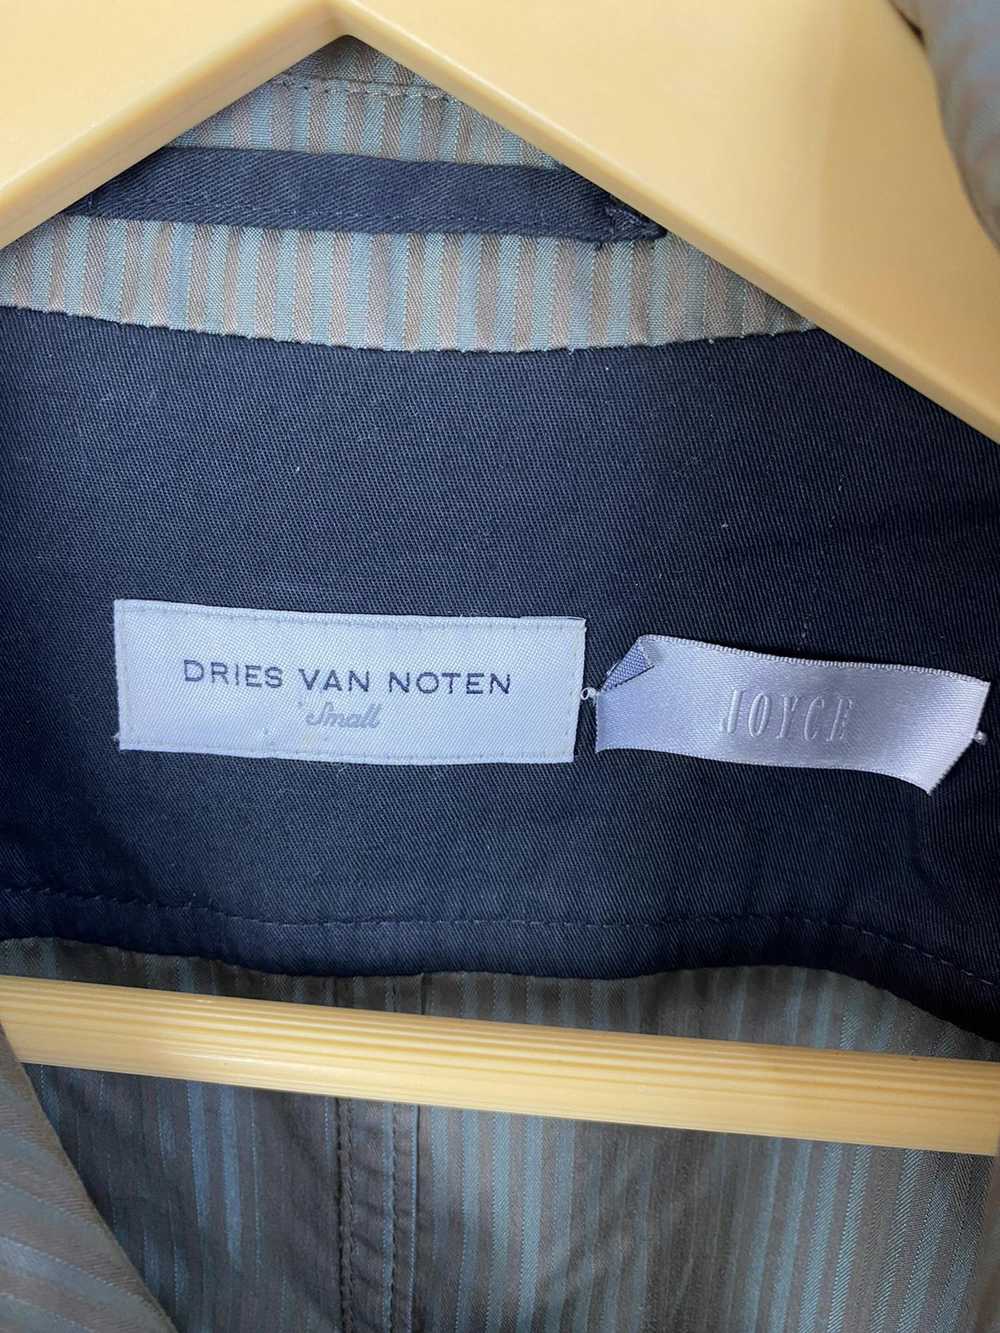 Dries Van Noten DRIES VAN NOTEN - JOYCE MILITARY … - image 6